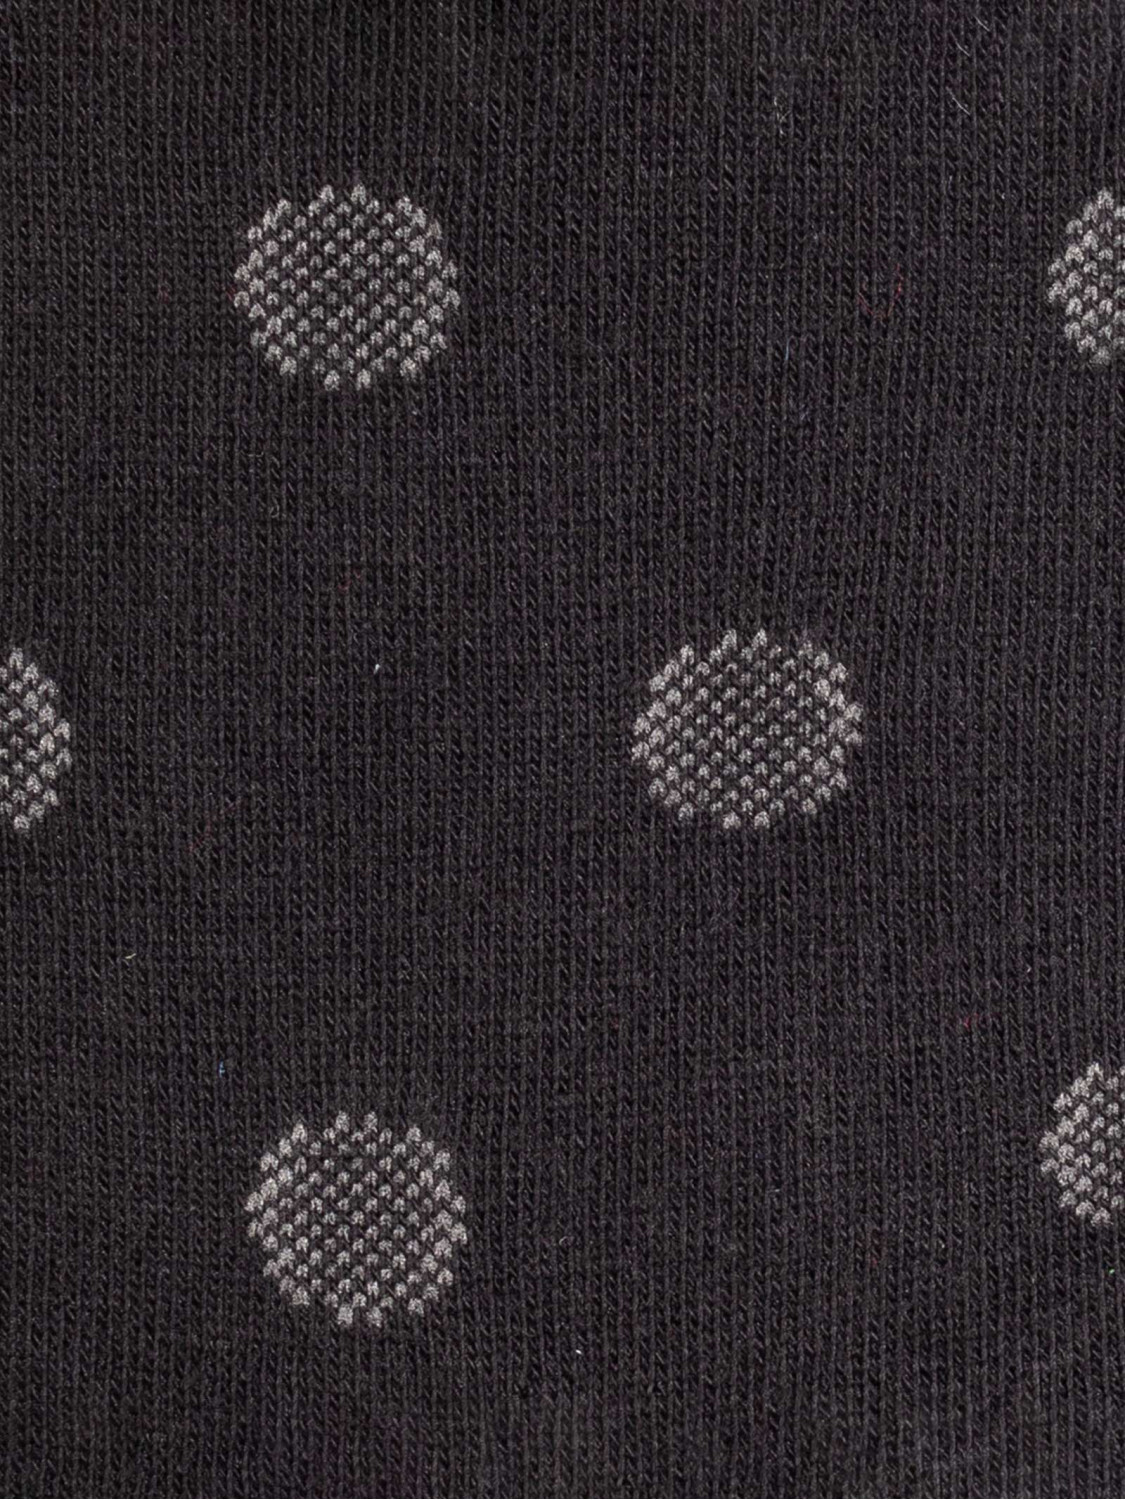 Gepunktete kurze Socken mit Polka-Dot-Muster